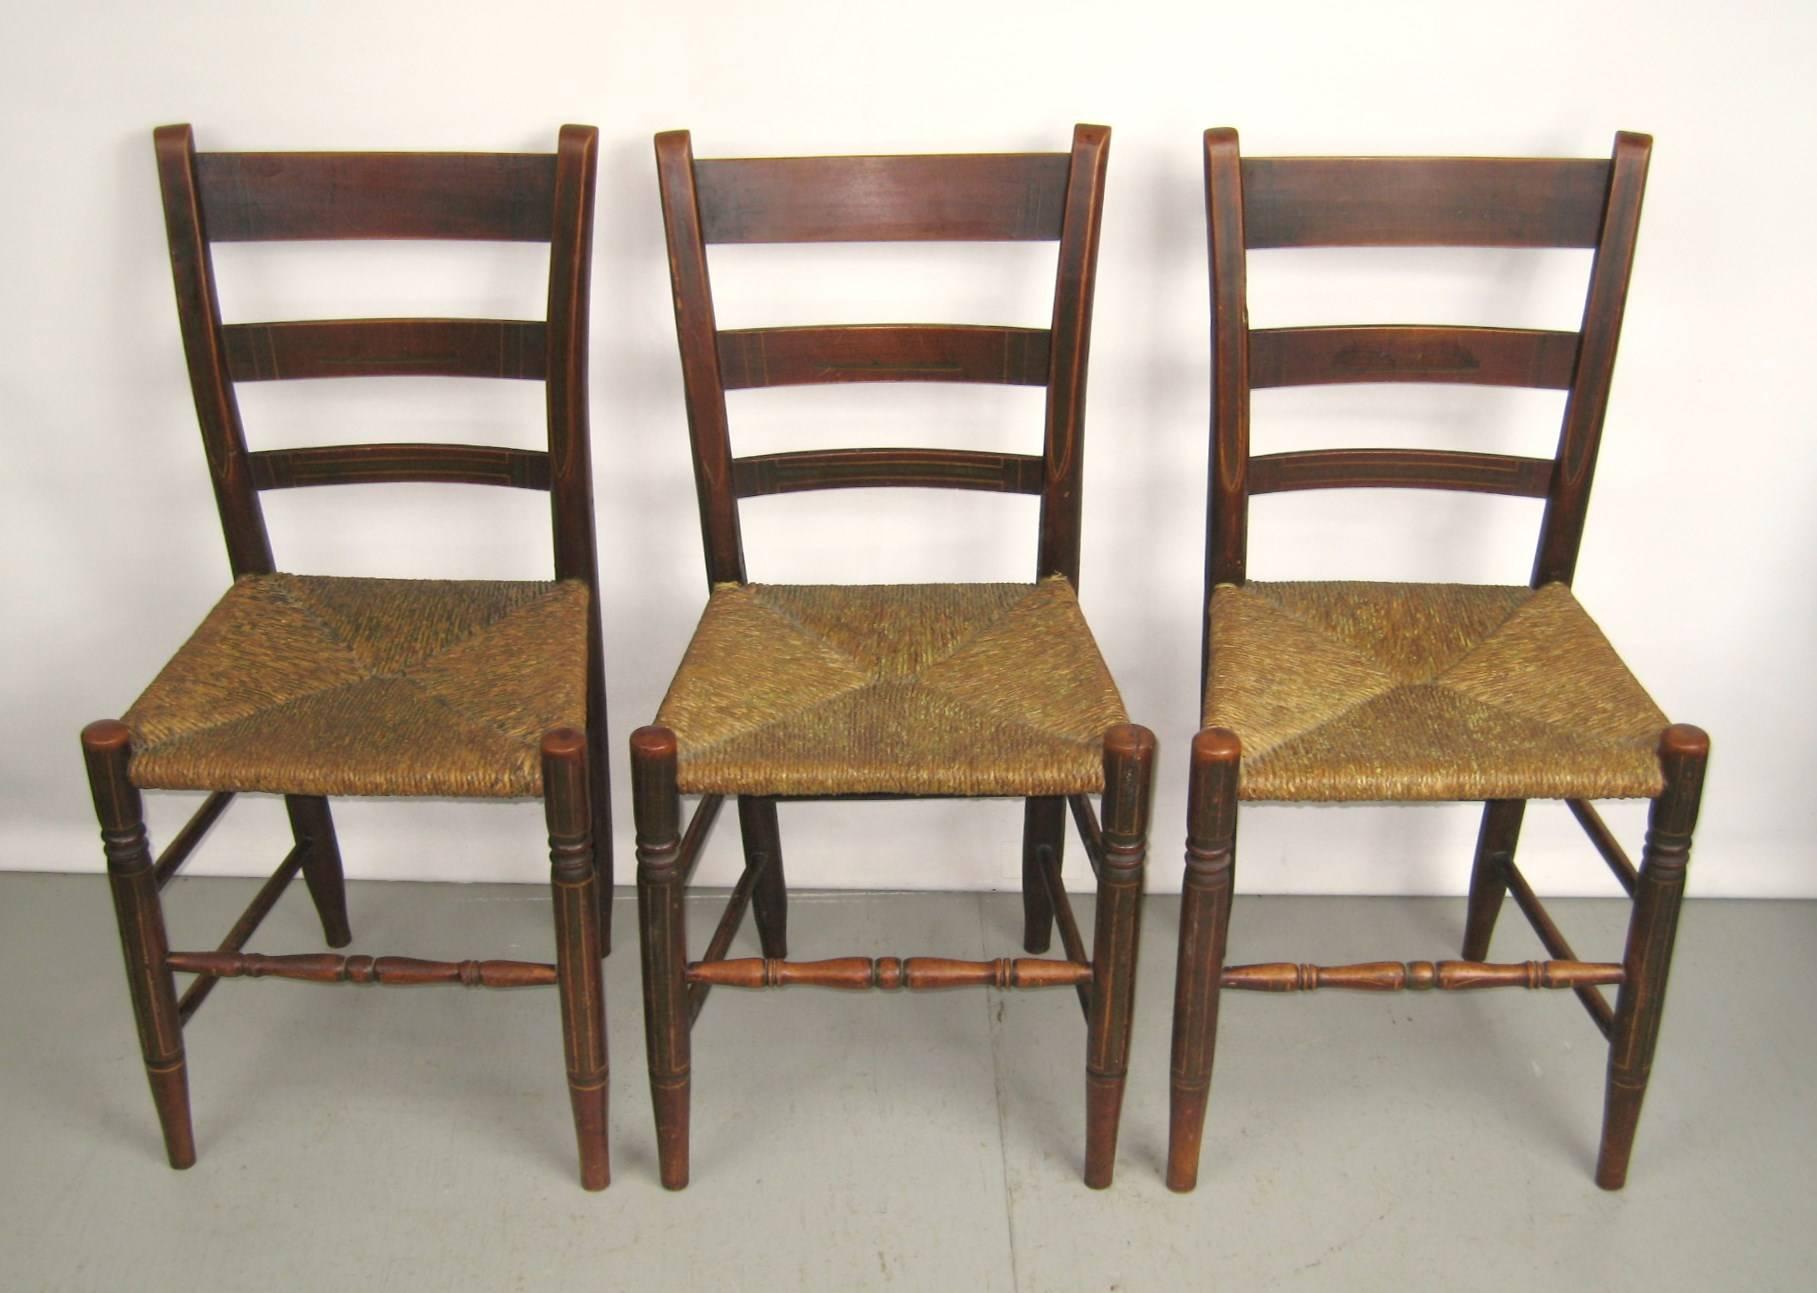 Superbe ensemble de six chaises en jonc décorées à la peinture... De véritables pièces primitives antiques provenant de ma propriété historique de 1769 dans la vallée de l'Hudson, dans l'État de New York. Ces pièces ont été soigneusement